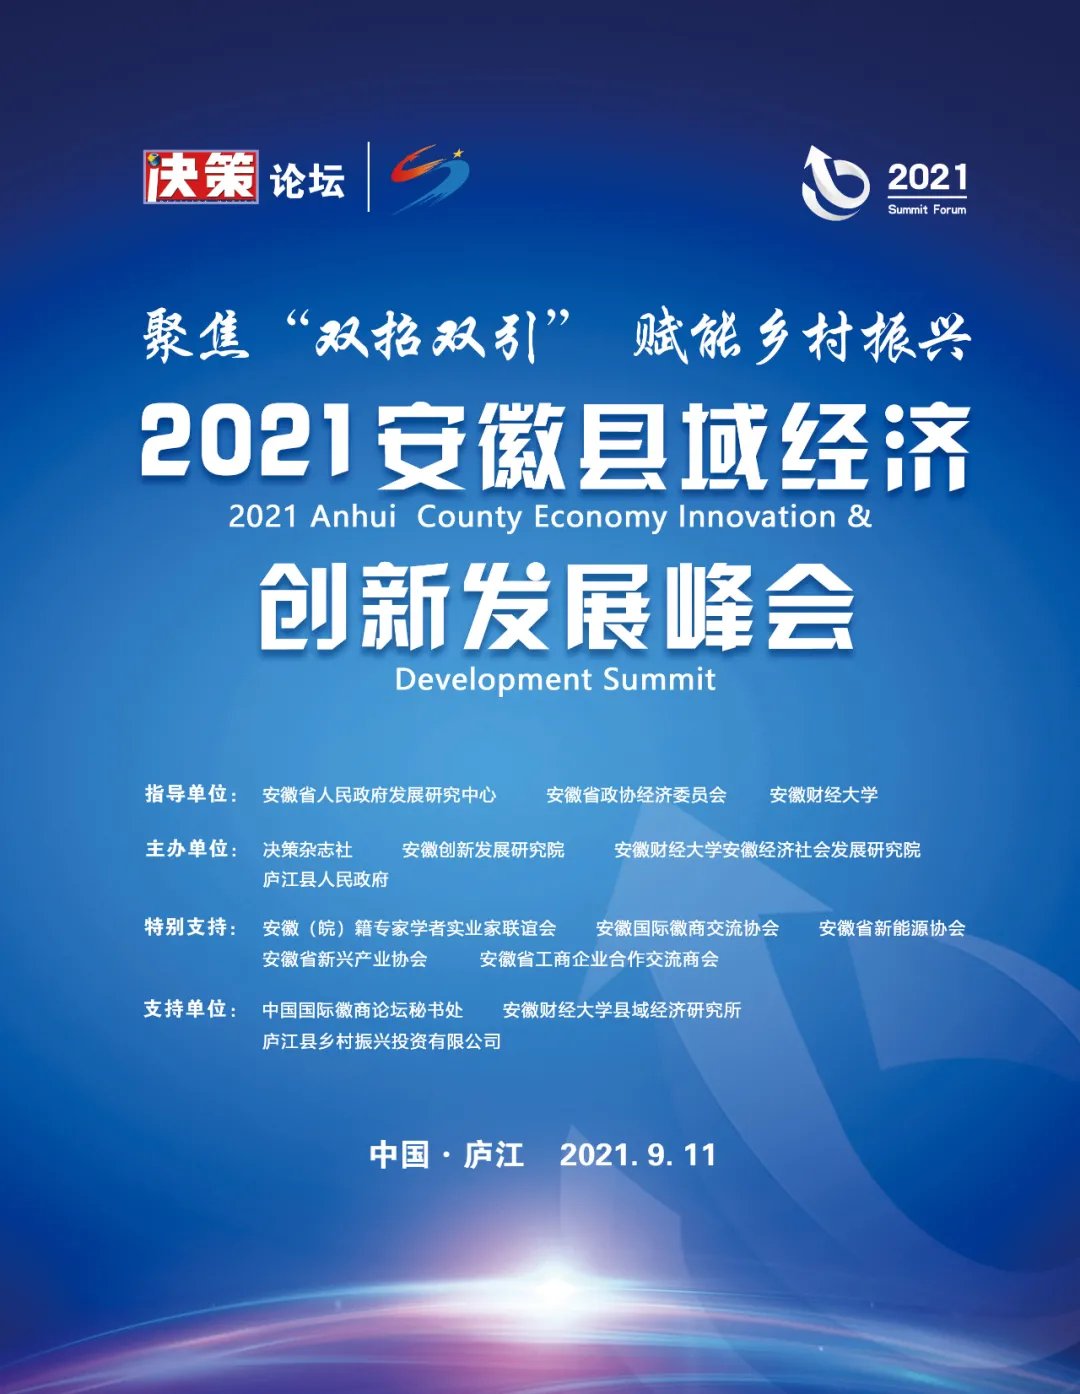 第三屆！2021安徽縣域經濟創新發展峰會來了